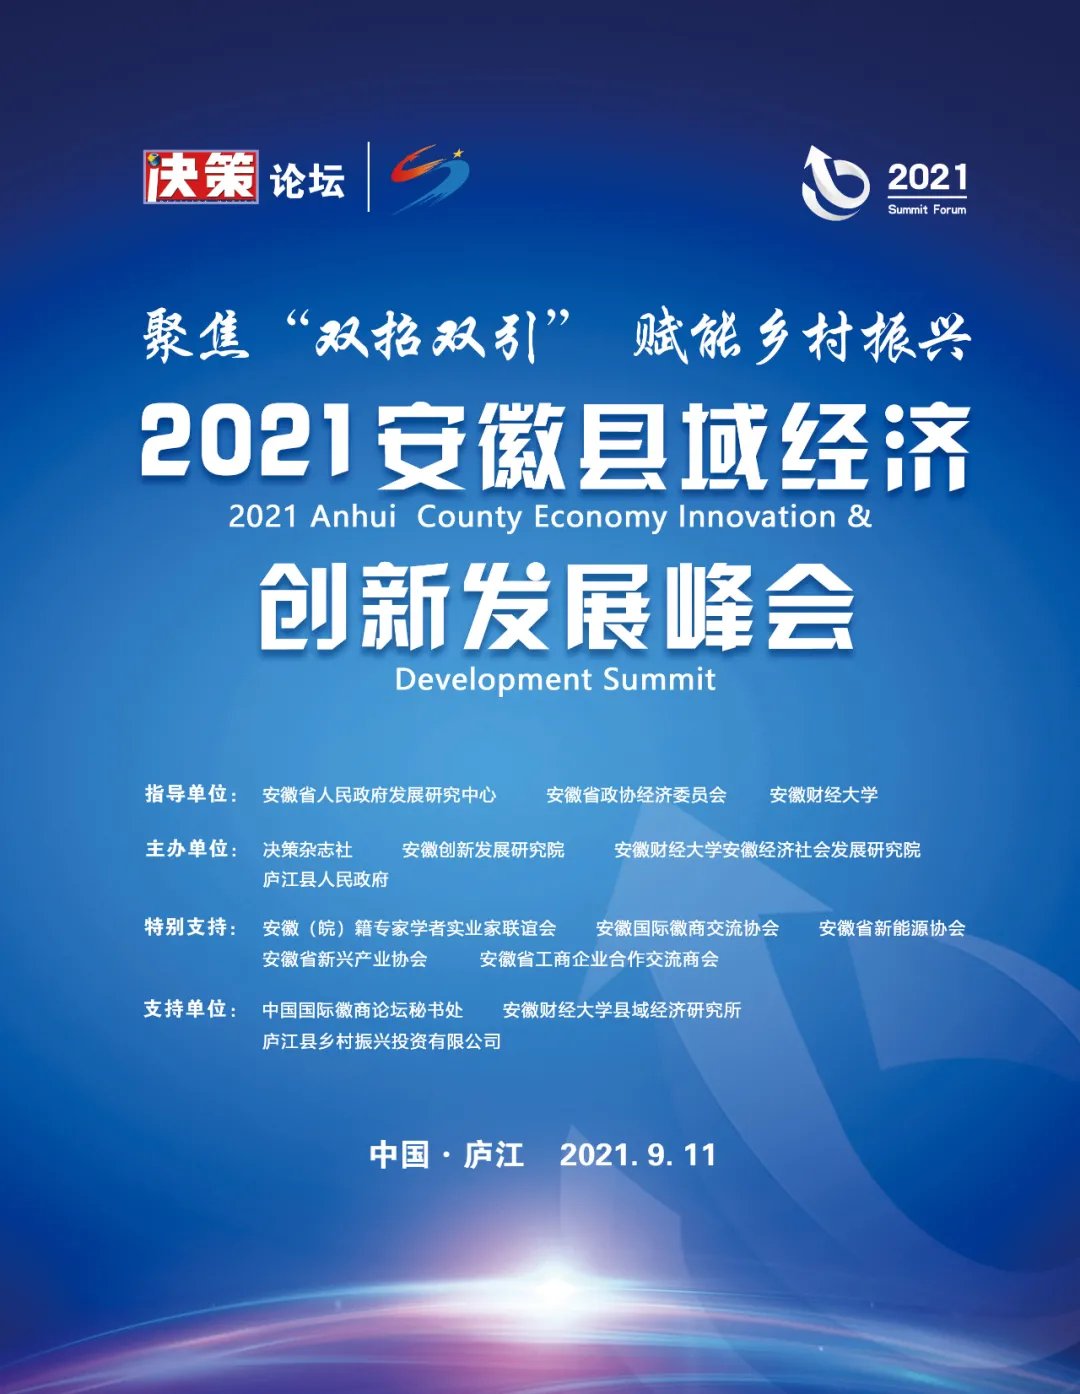 第三屆！2021安徽縣域經濟創新發展峰會來了